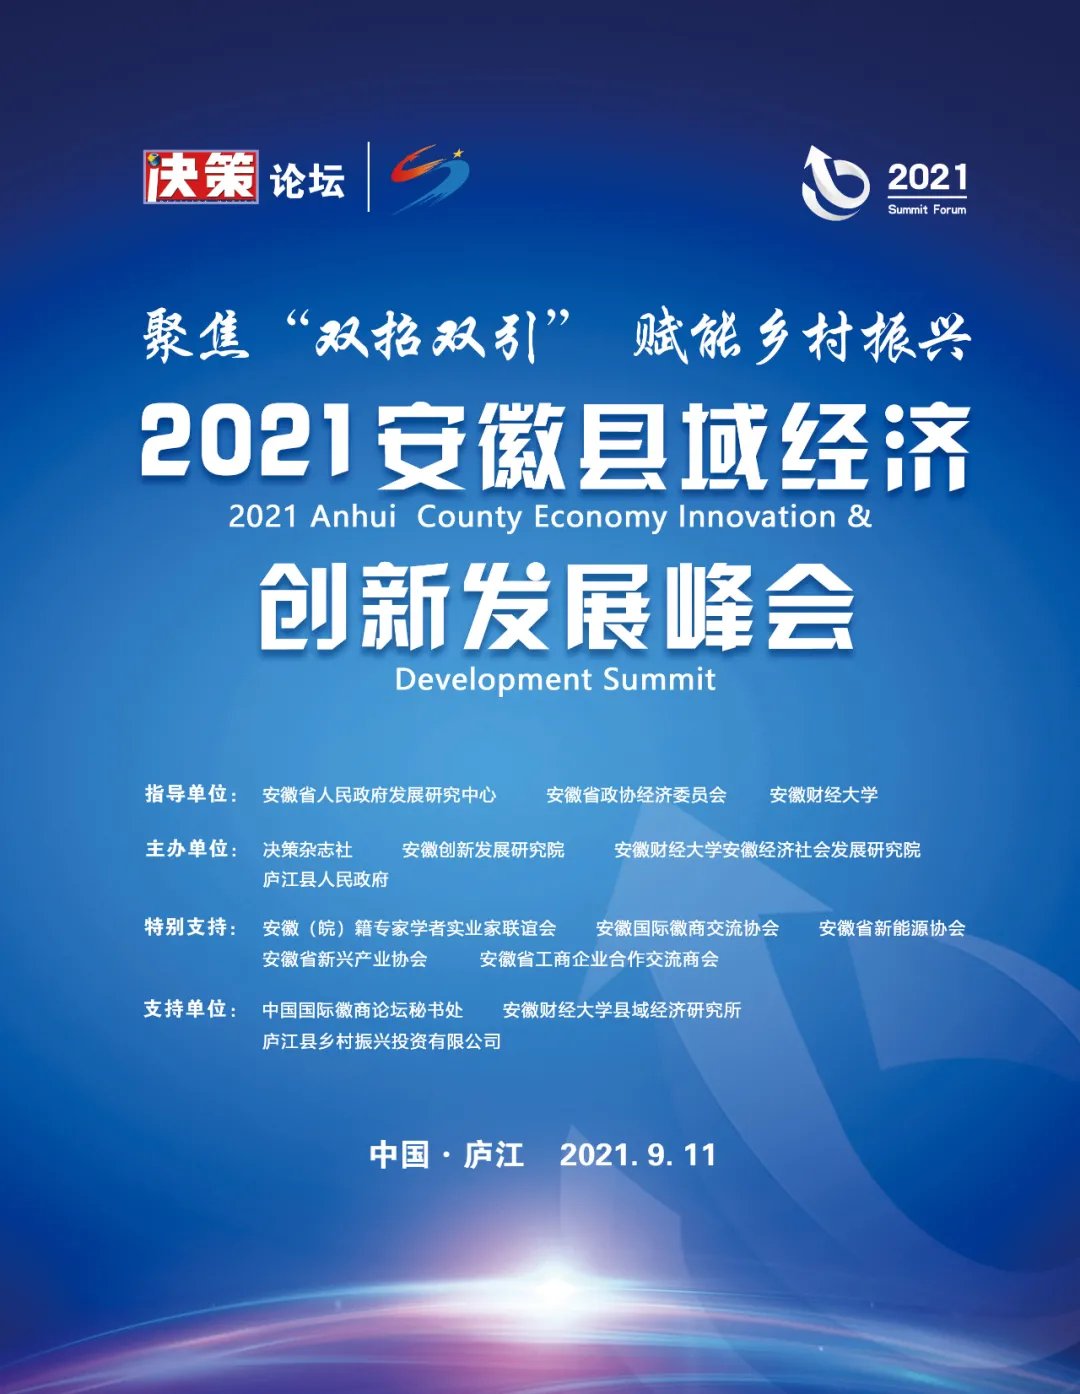 第三屆！2021安徽縣域經濟創新發展峰會來了